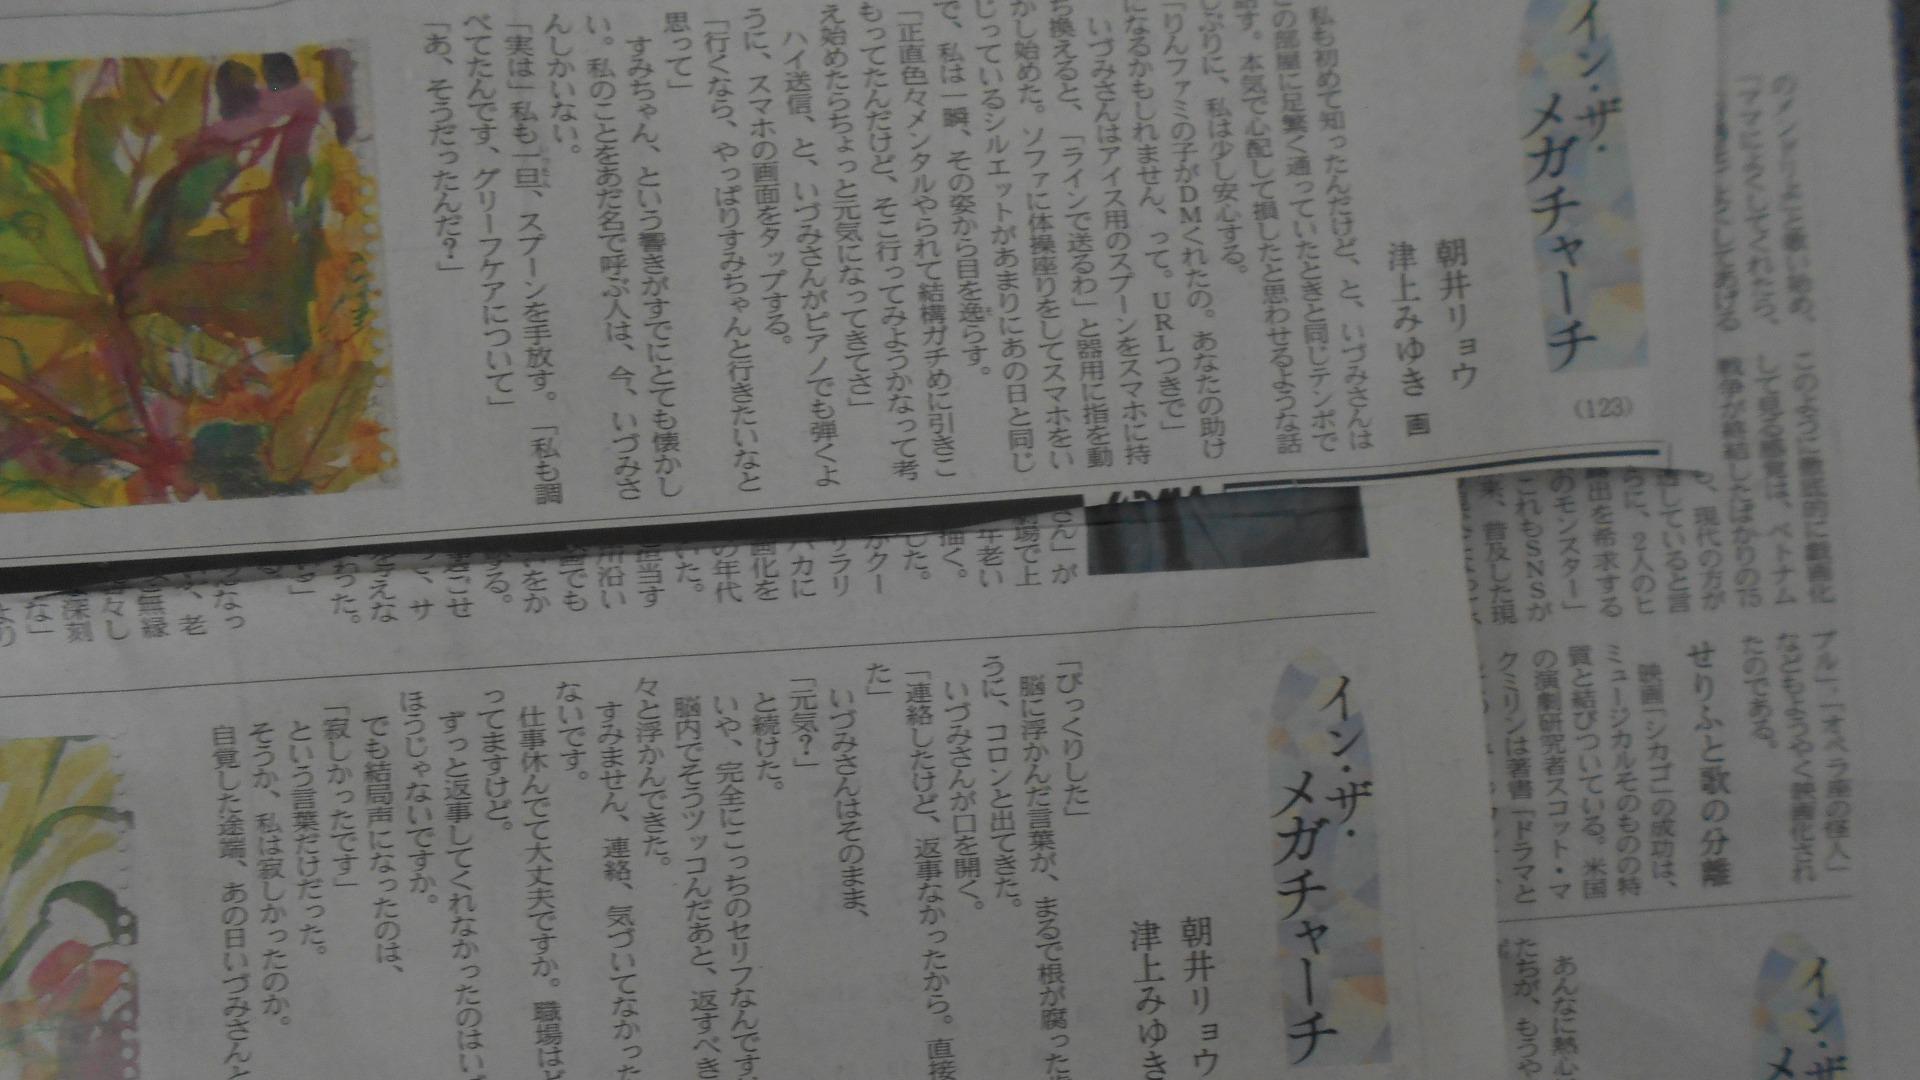 三浦春馬さんの事件がモデルでは？」と言われて日本経済新聞の連載小説 